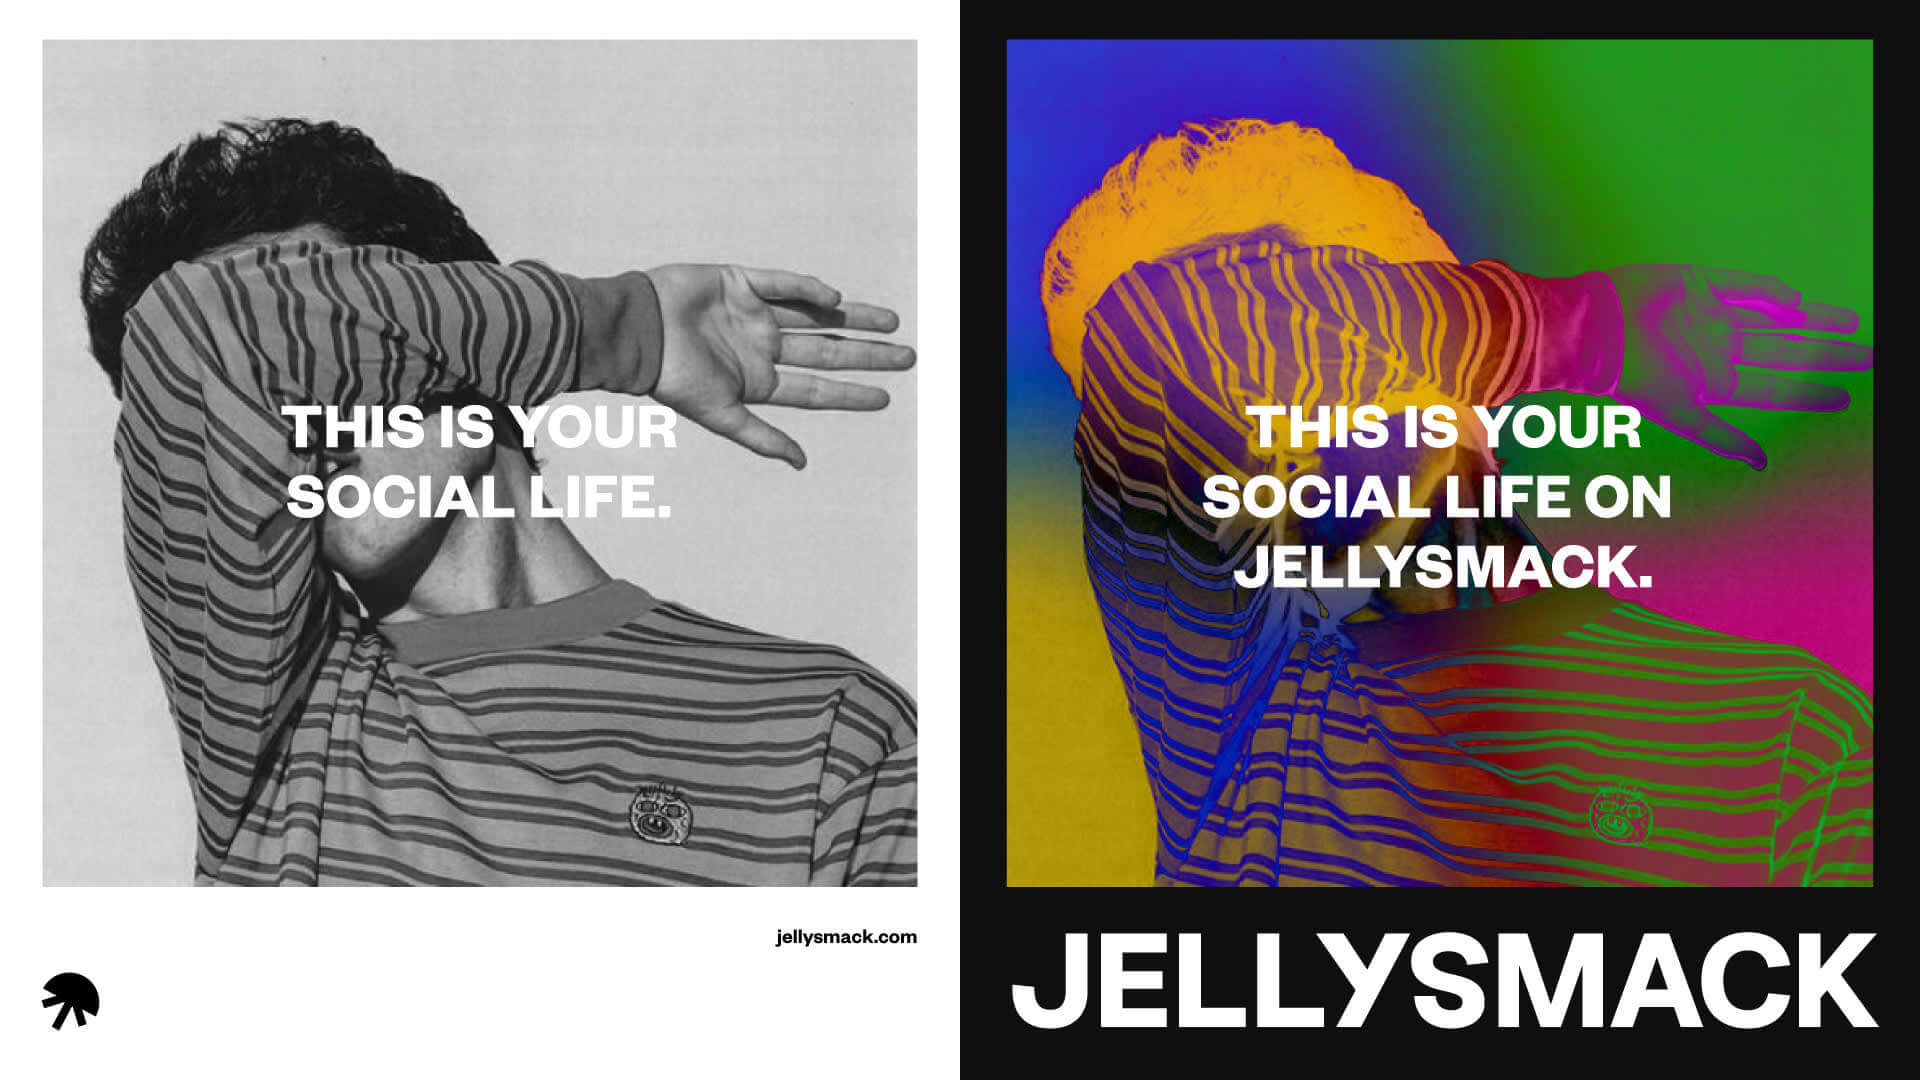 Das ist dein soziales Leben auf dem Jellysmack-Poster